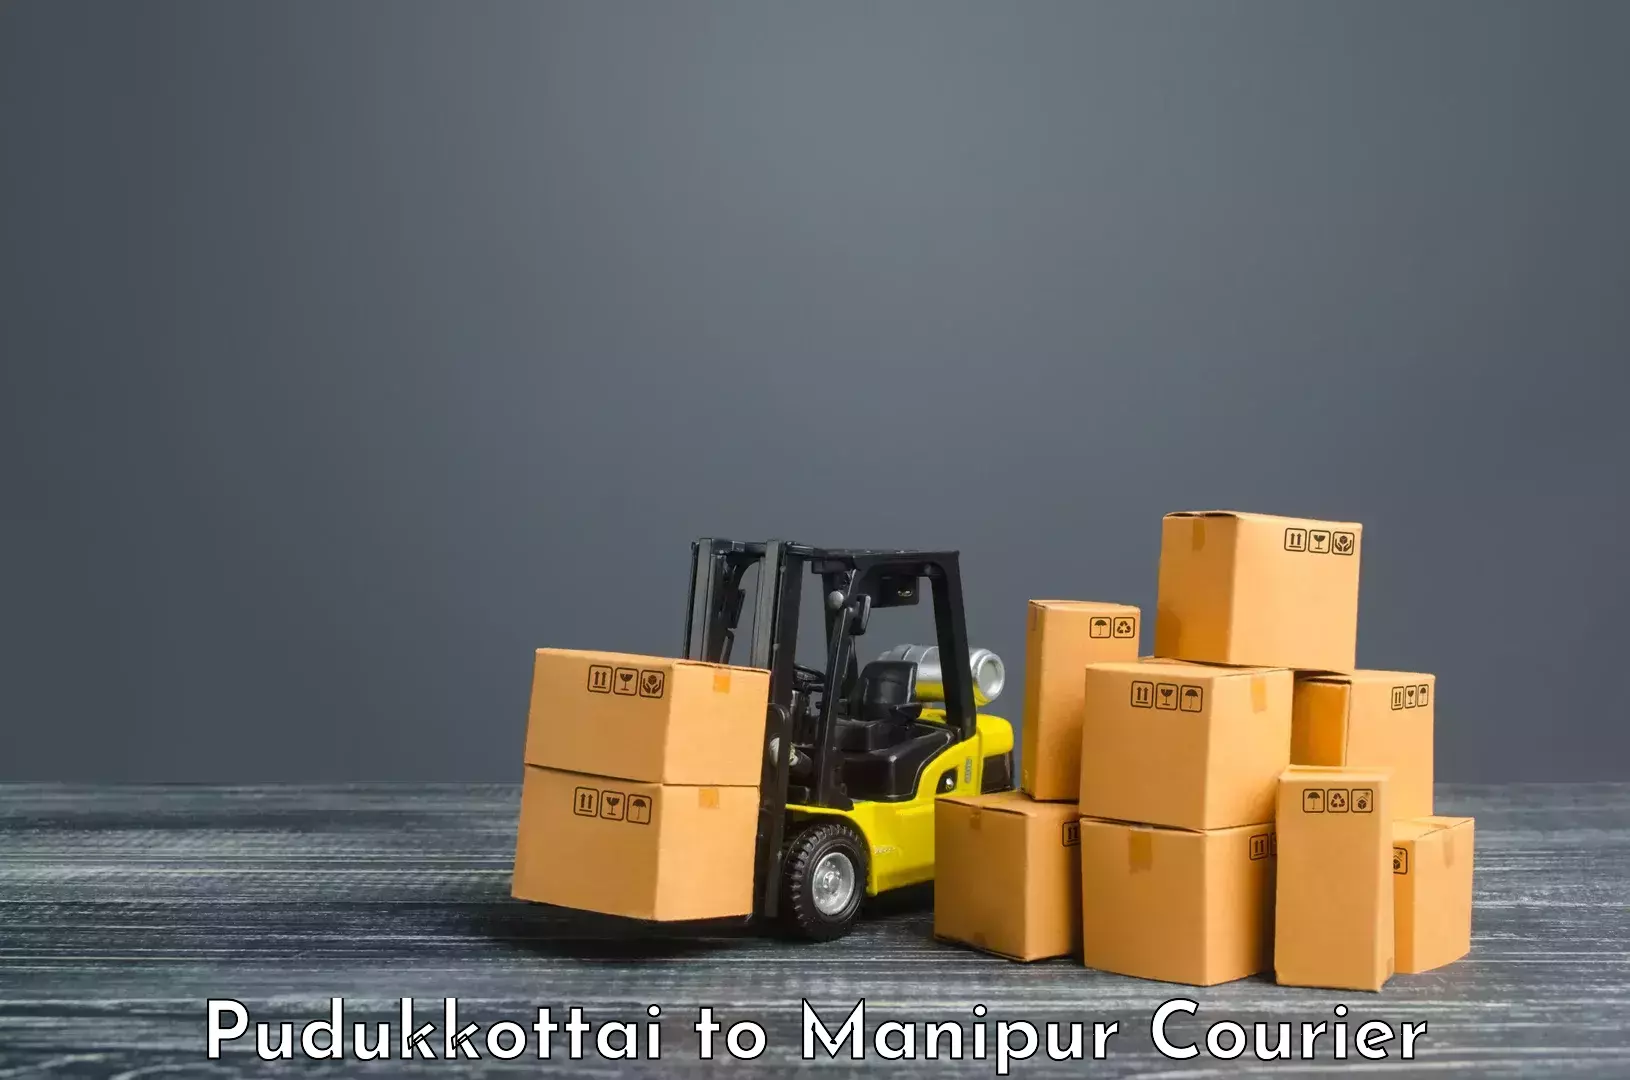 Online shipping calculator Pudukkottai to Chandel